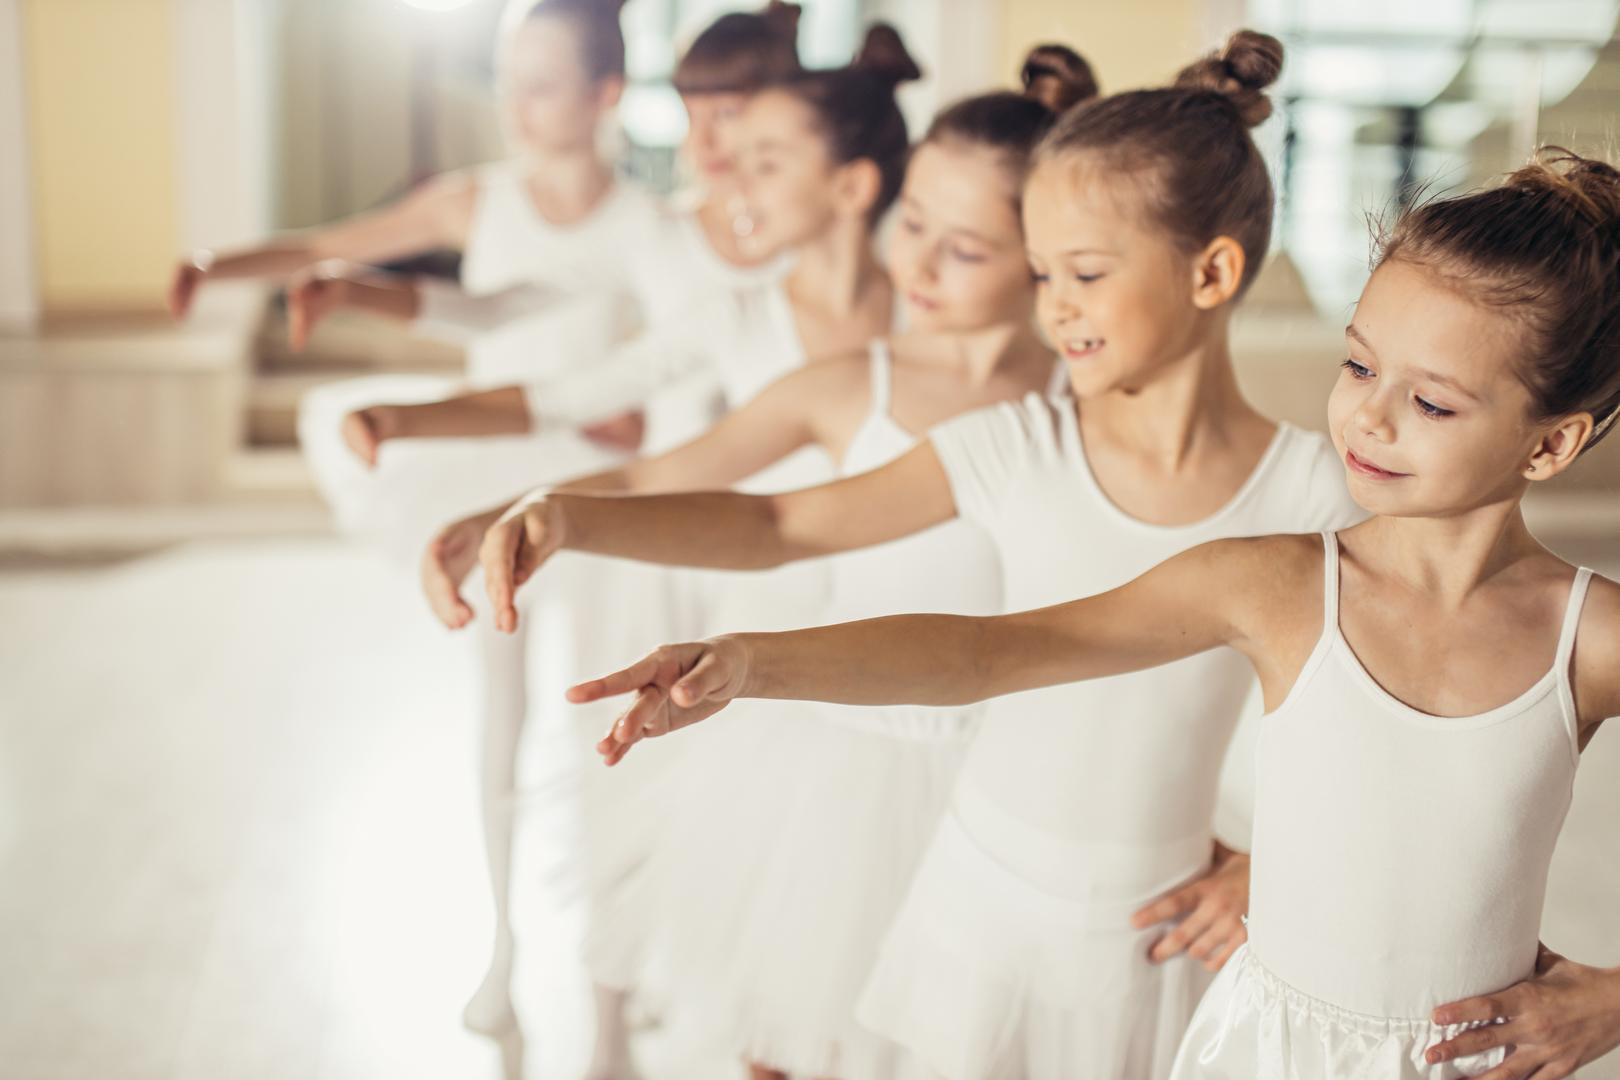 Ballett- und Tanzkurse für Kinder, Jugendliche und Erwachsene